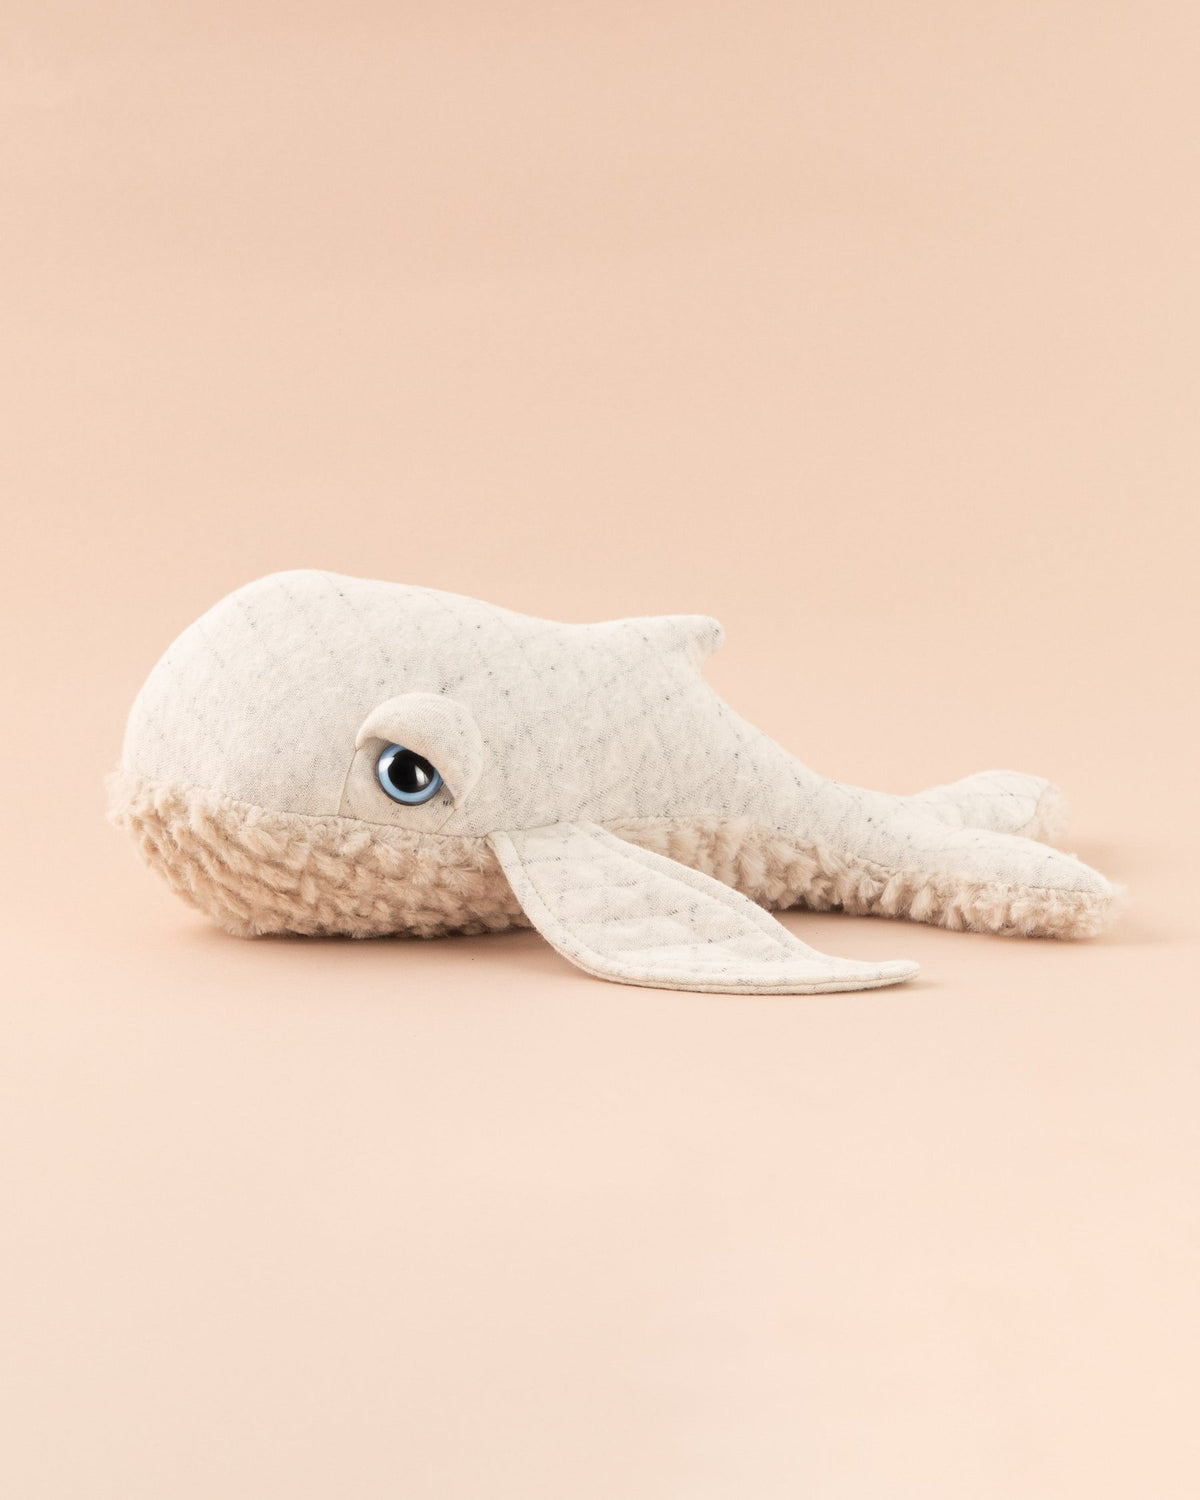 The Mini Whale Albino Fur